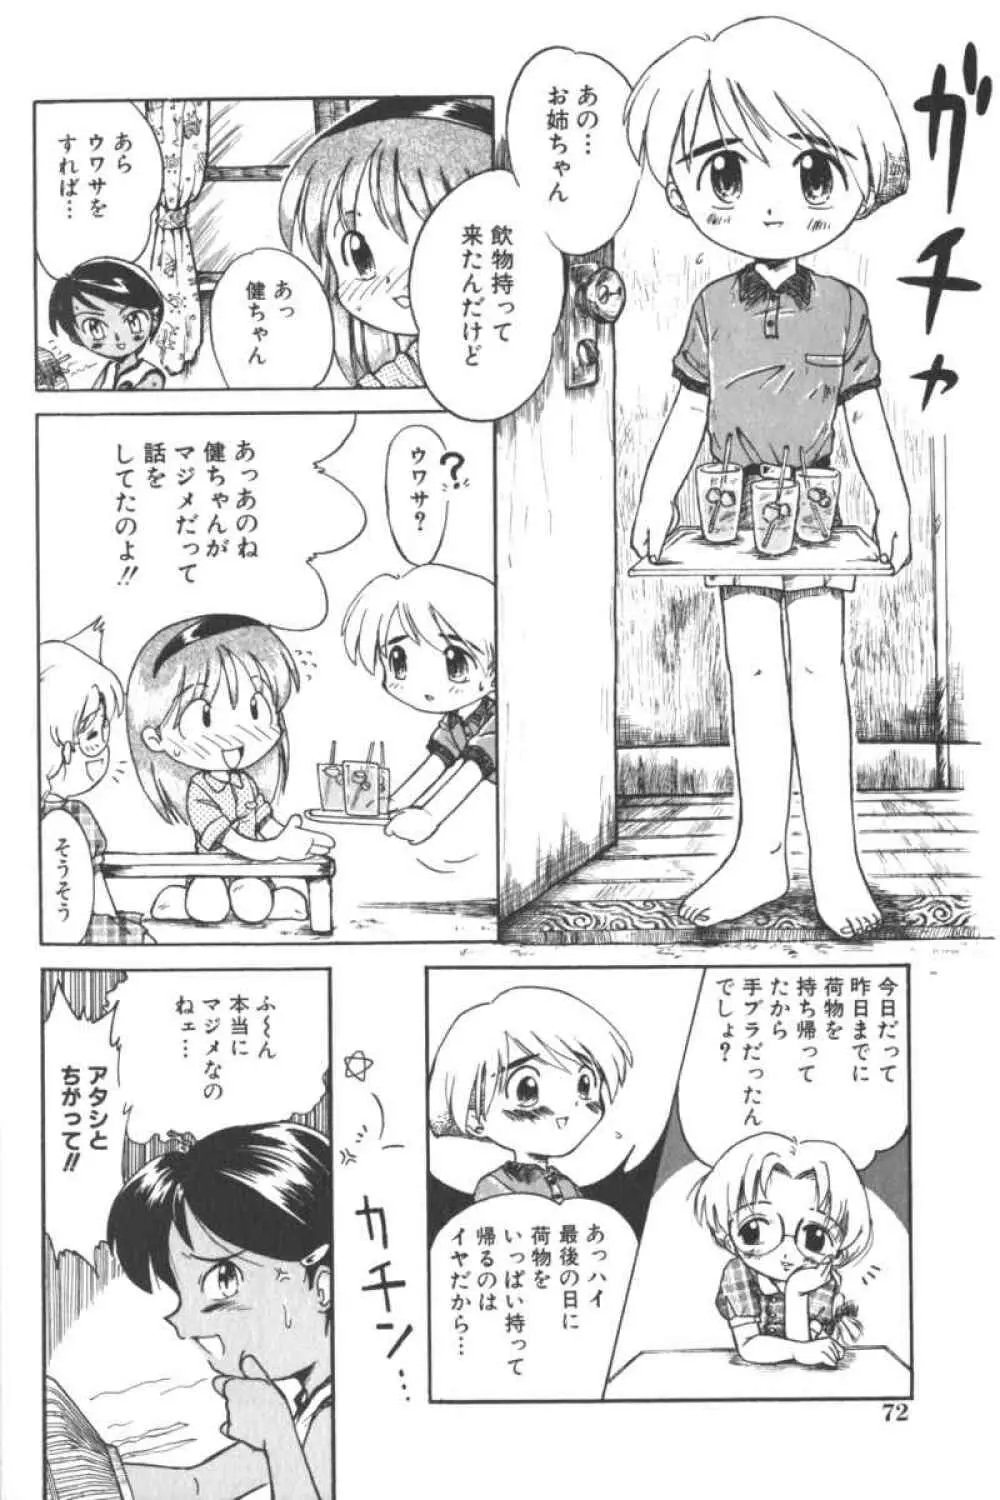 ロリータコミックさくら Vol.6 72ページ